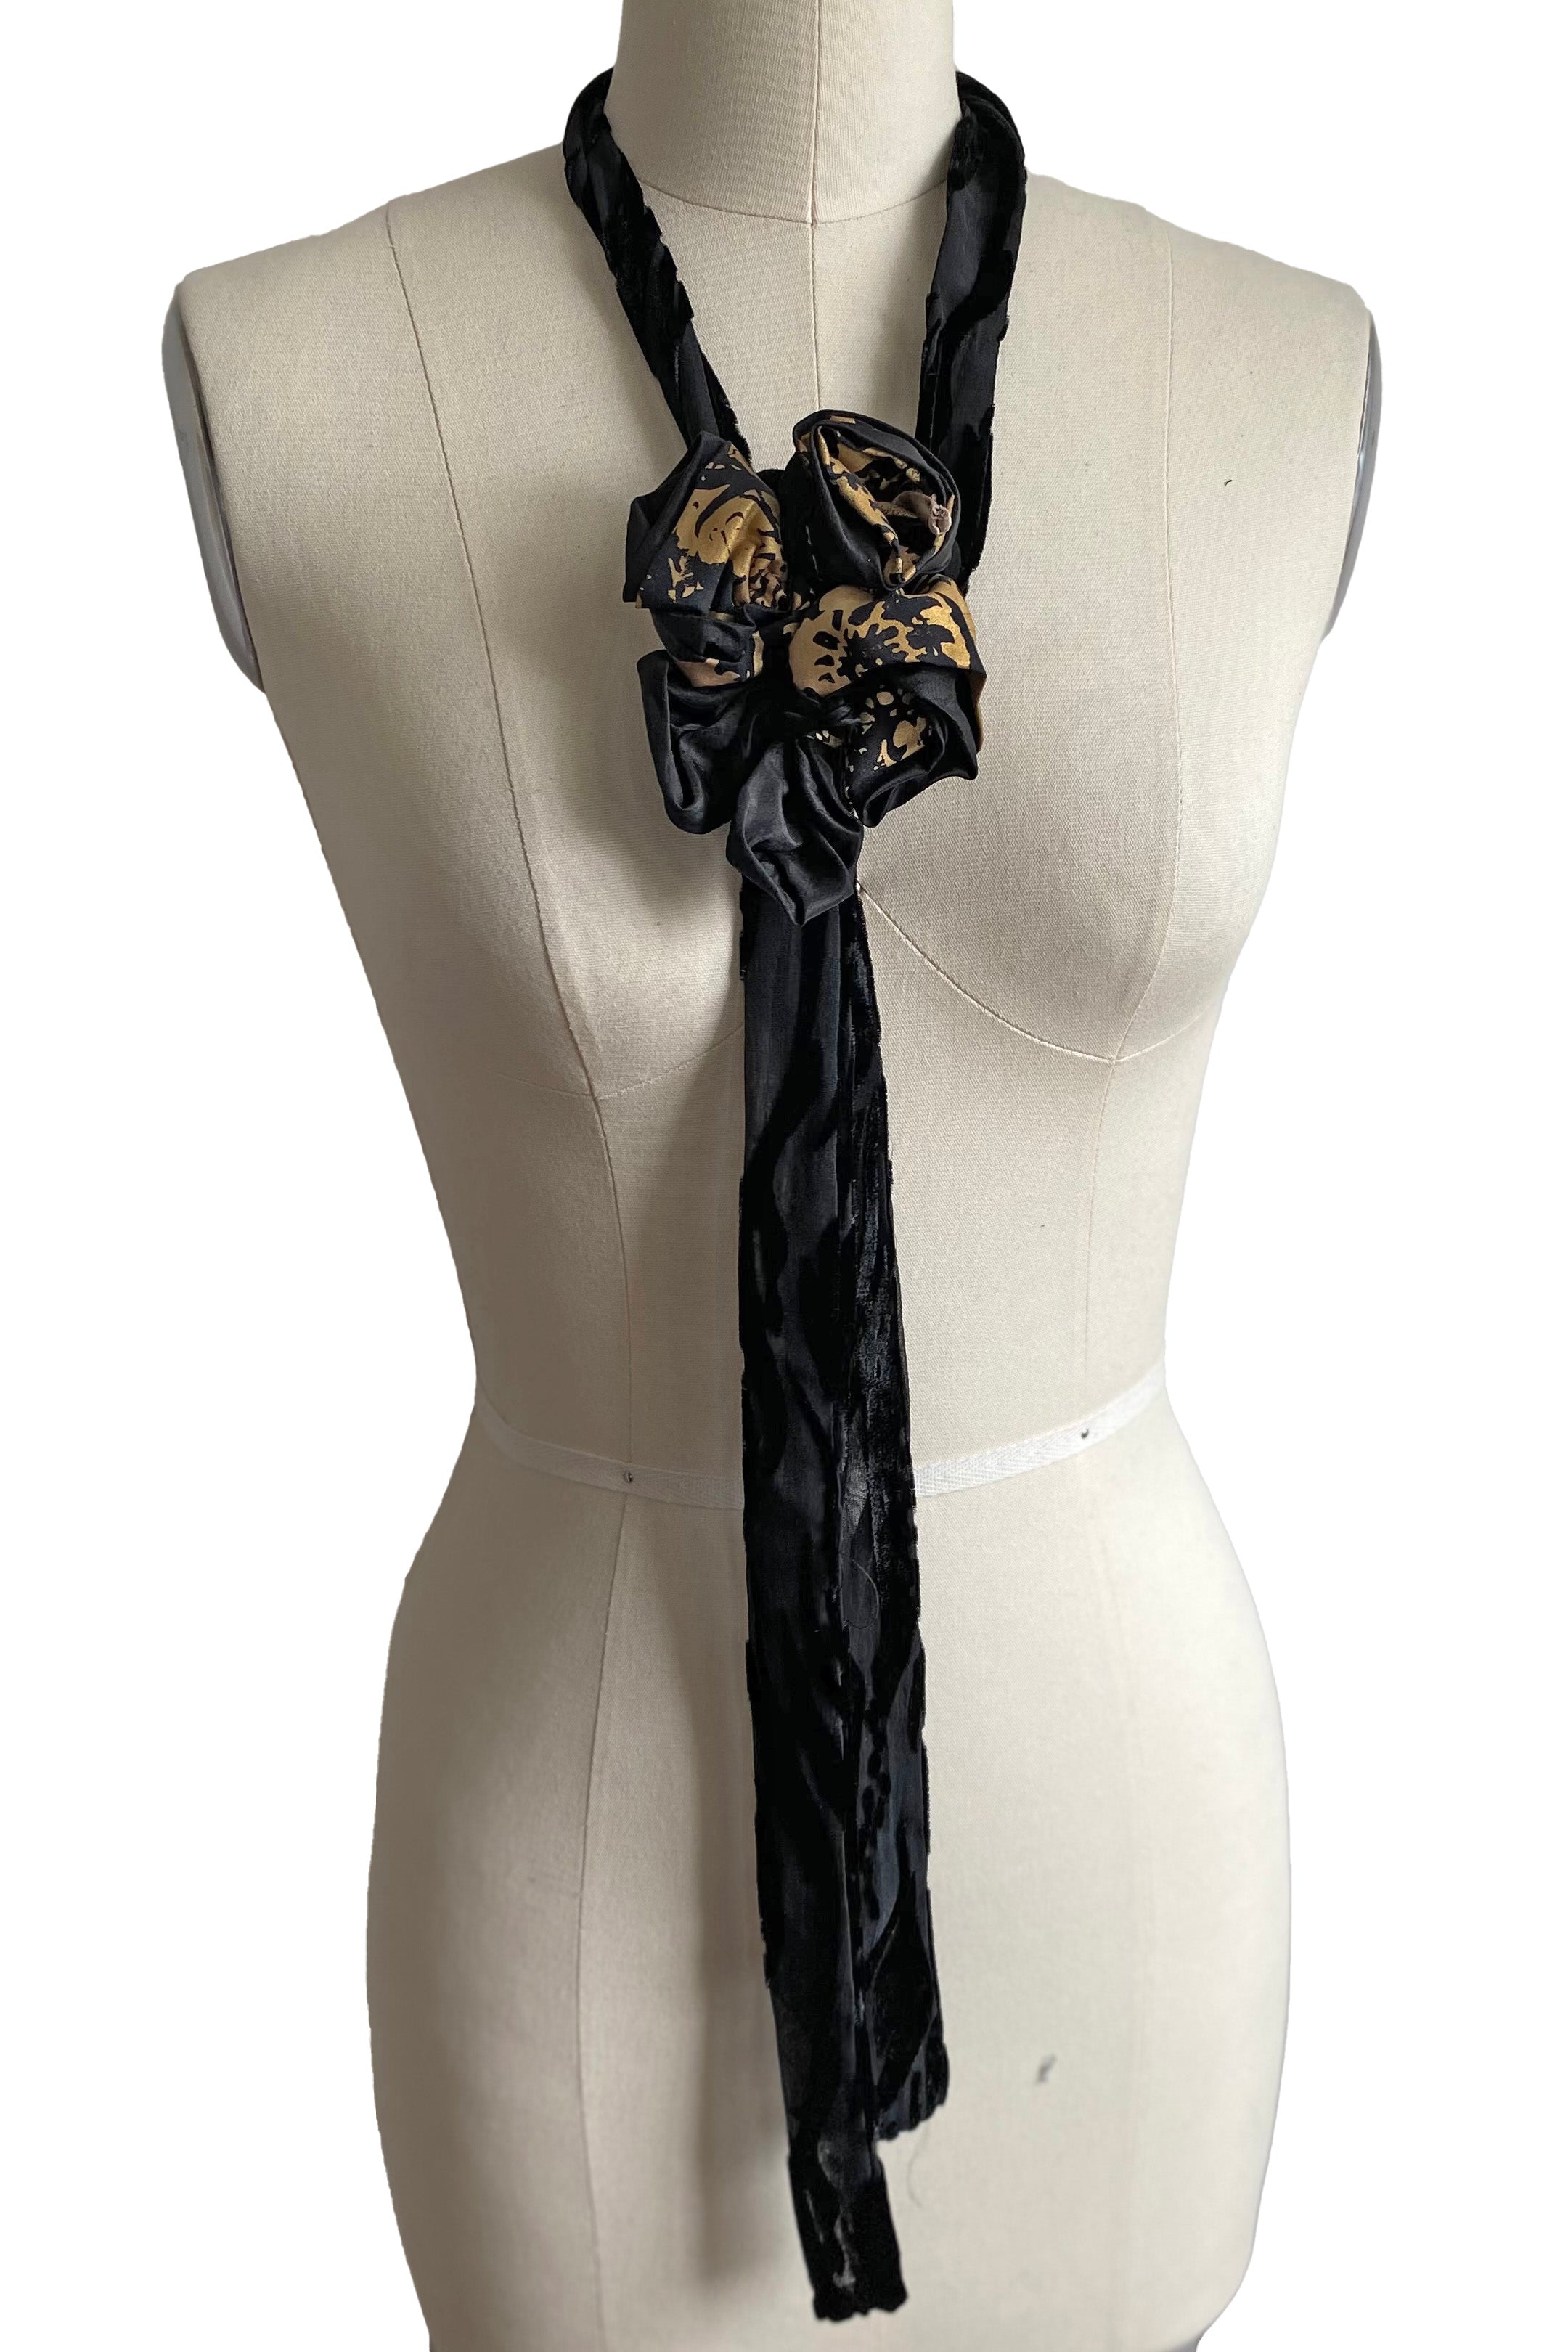 Adriana Silk Bolo Scarf - Black & Gold Printed Flower w/ Black Velvet Tie